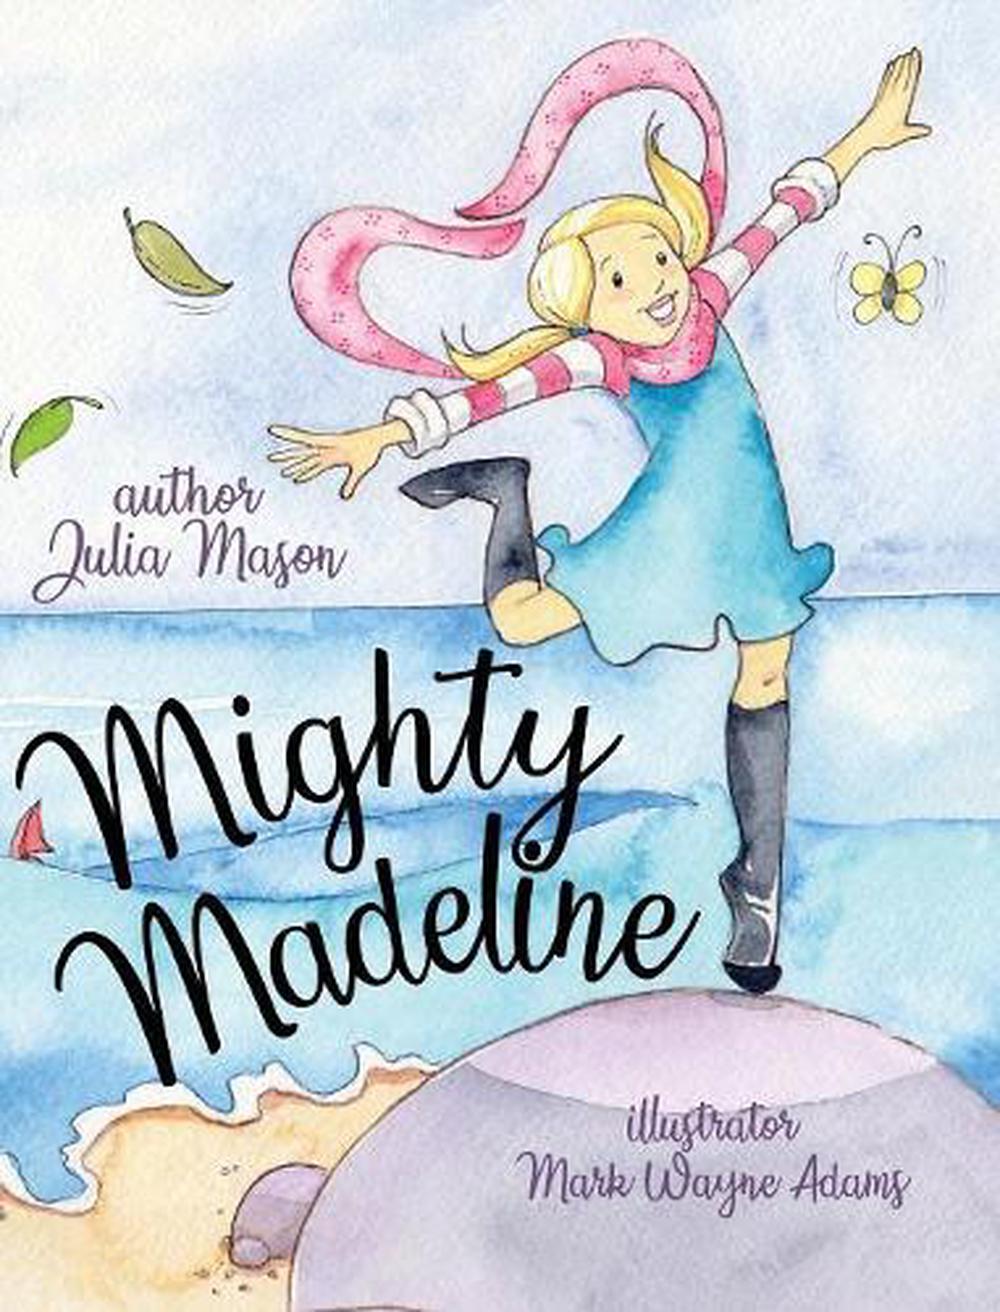 madeline miller next book